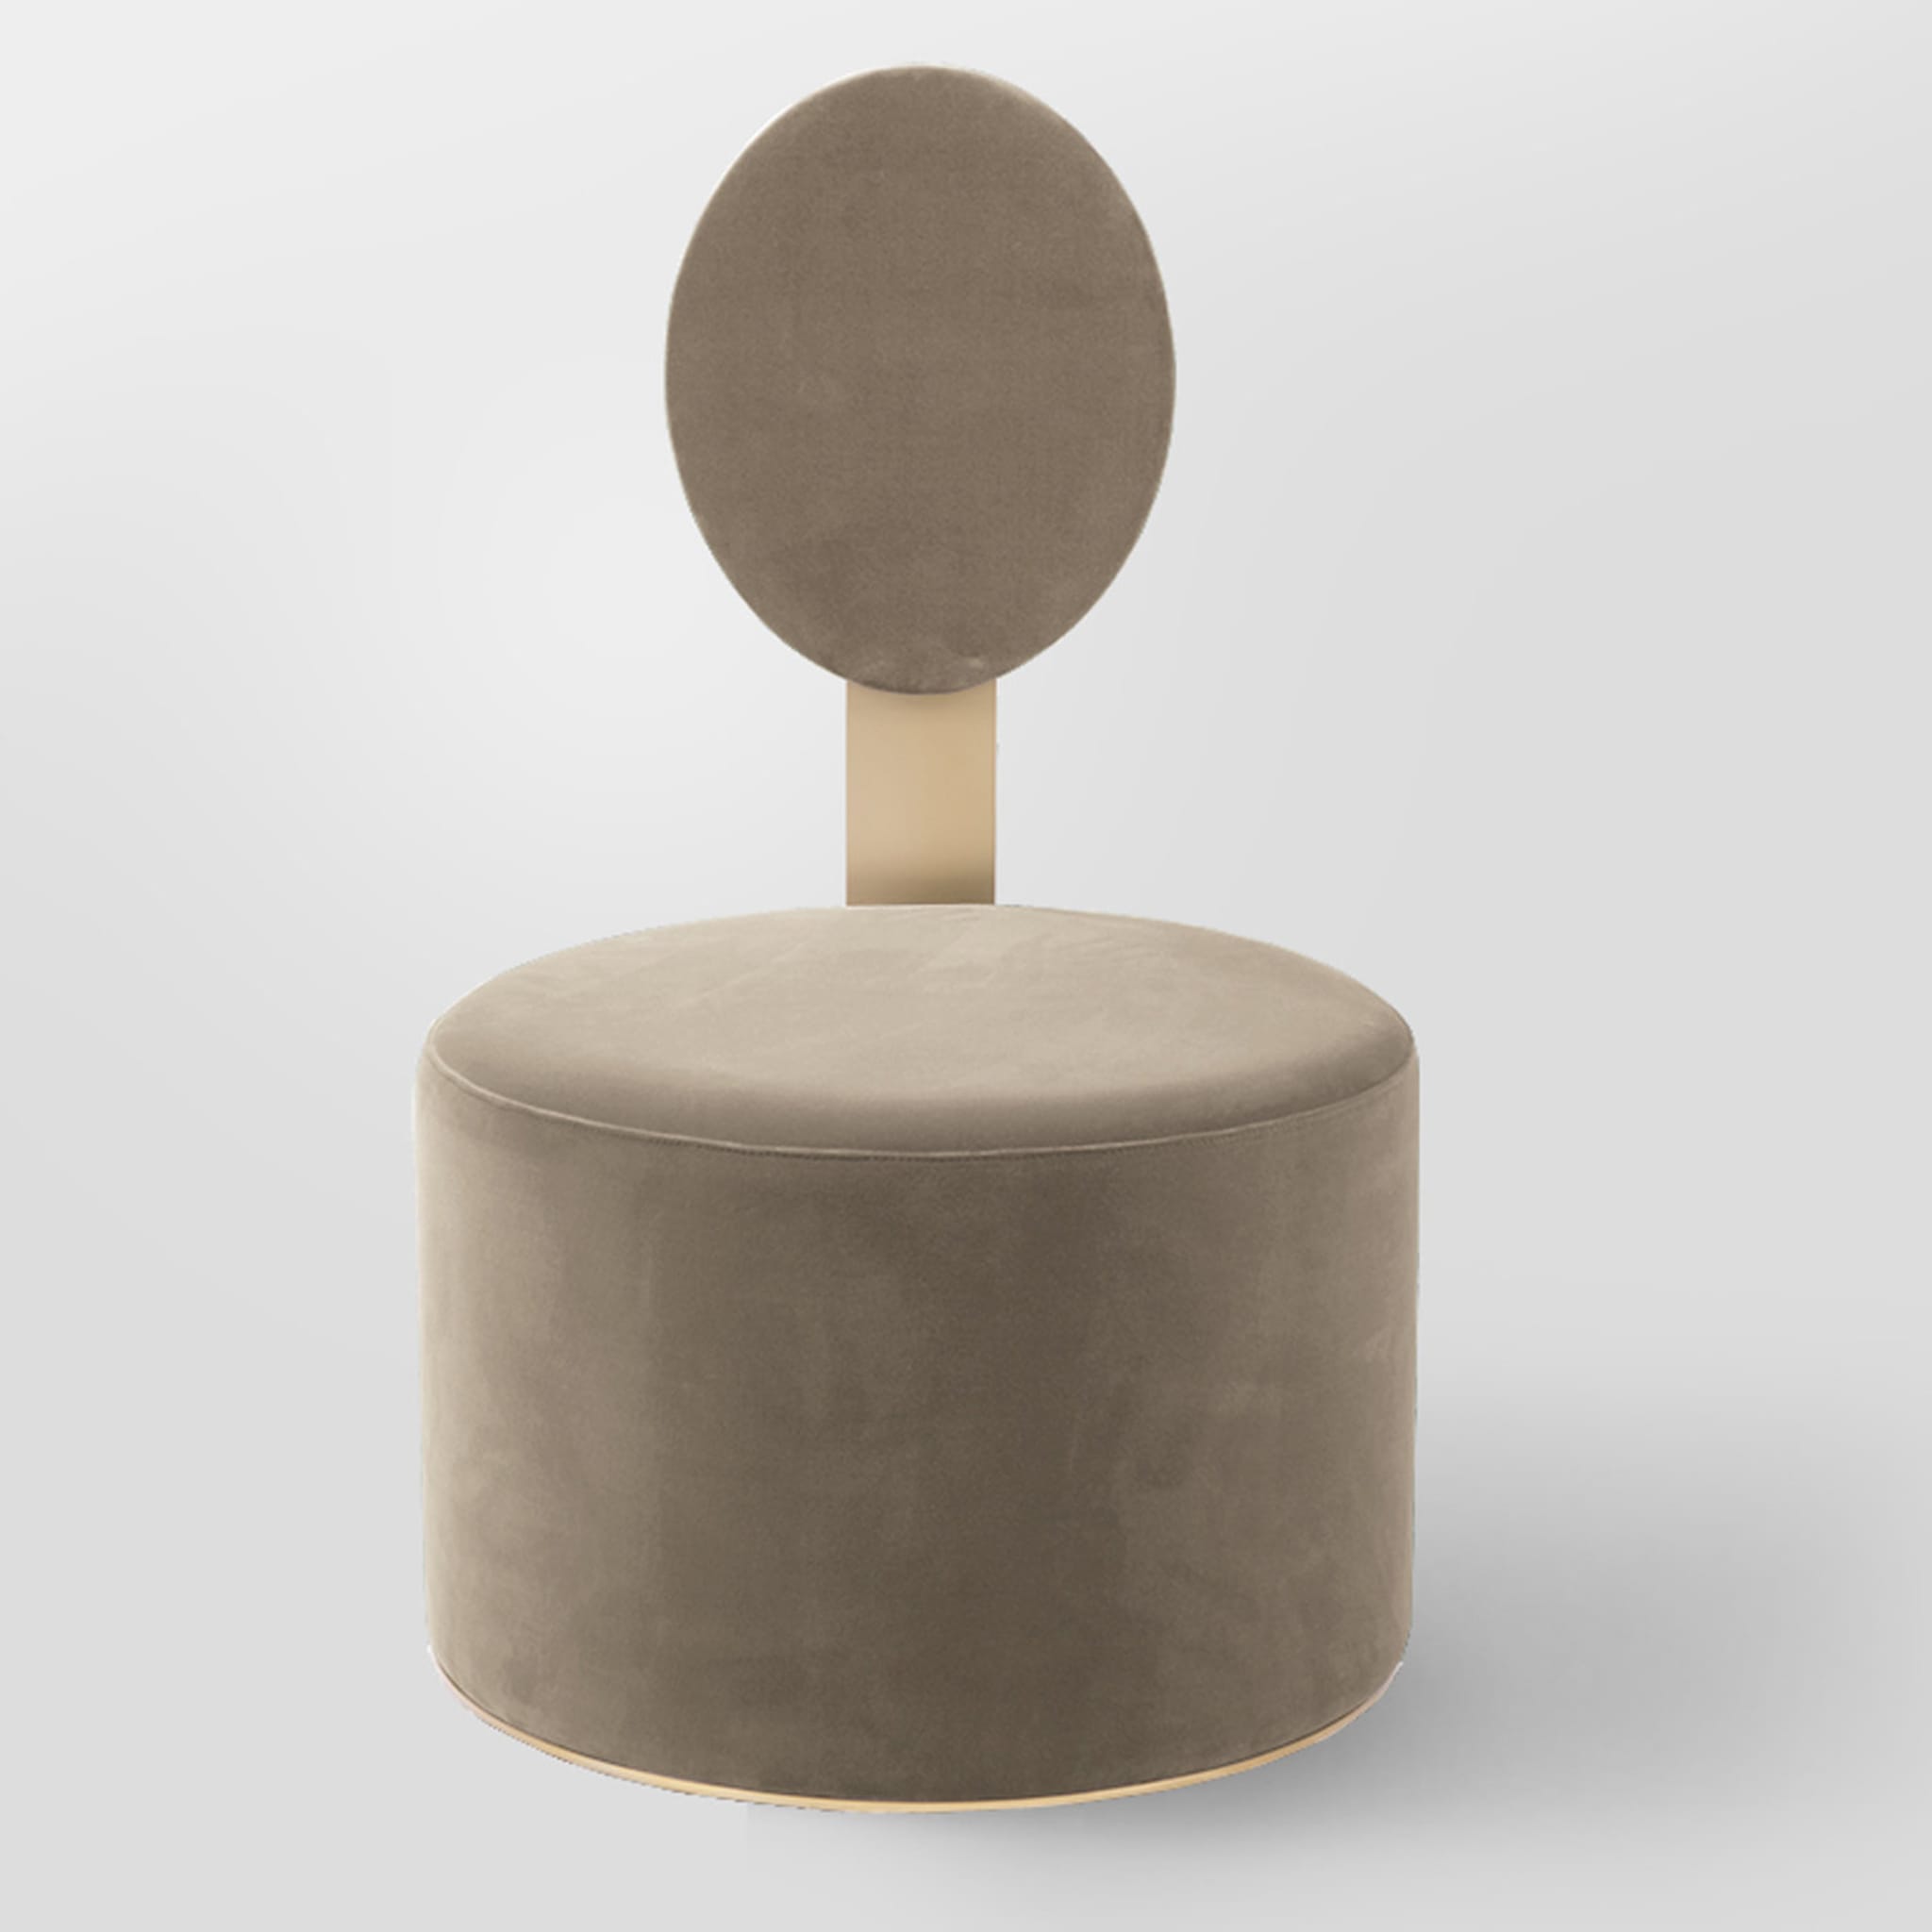 Pop Beige Stuhl von Artefatto Design Studio - Alternative Ansicht 1